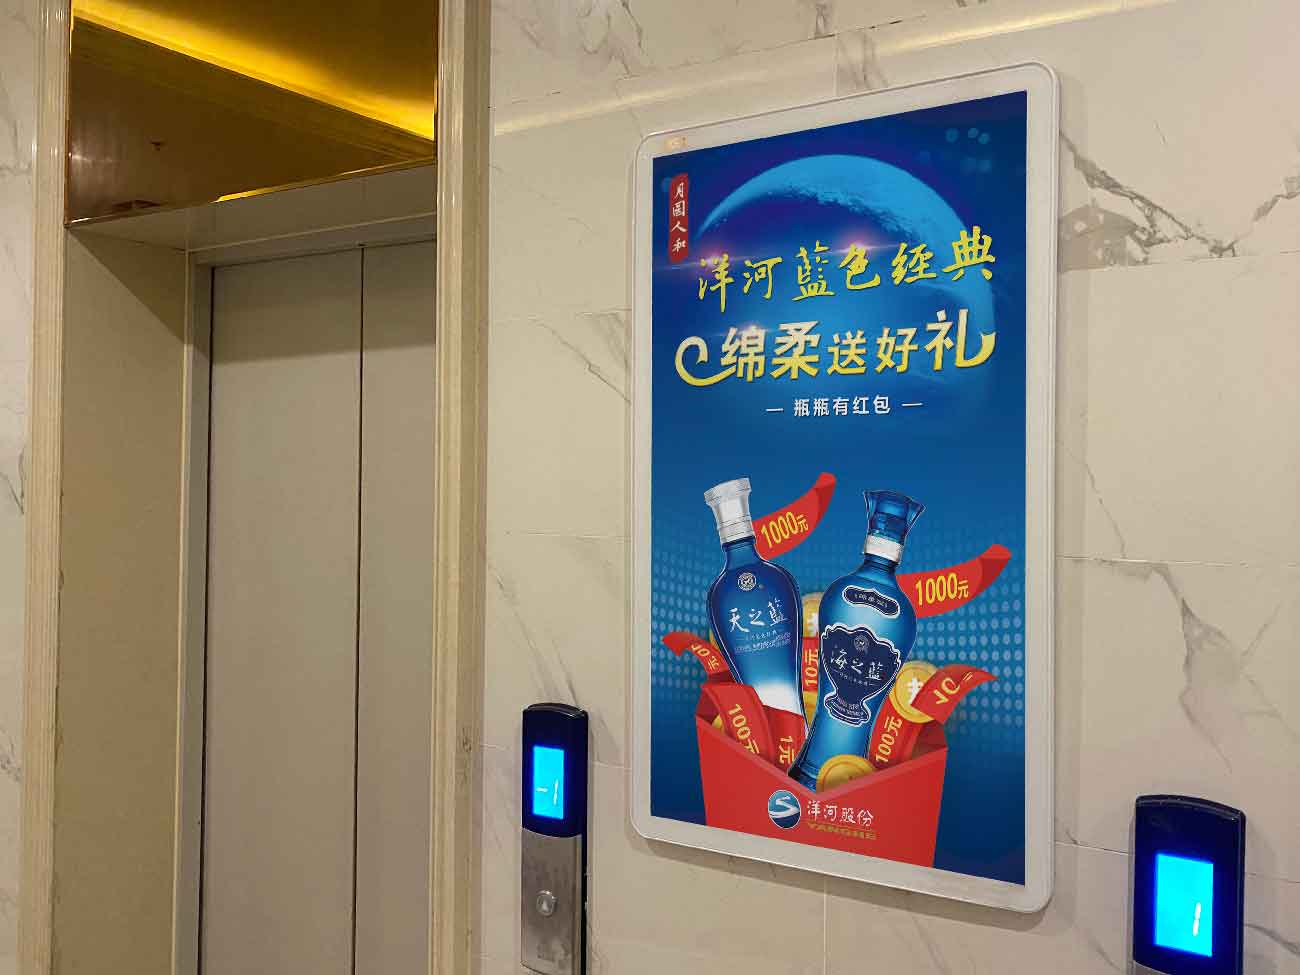 上海电梯视频广告专业广告投放平台丨思框传媒社区广告